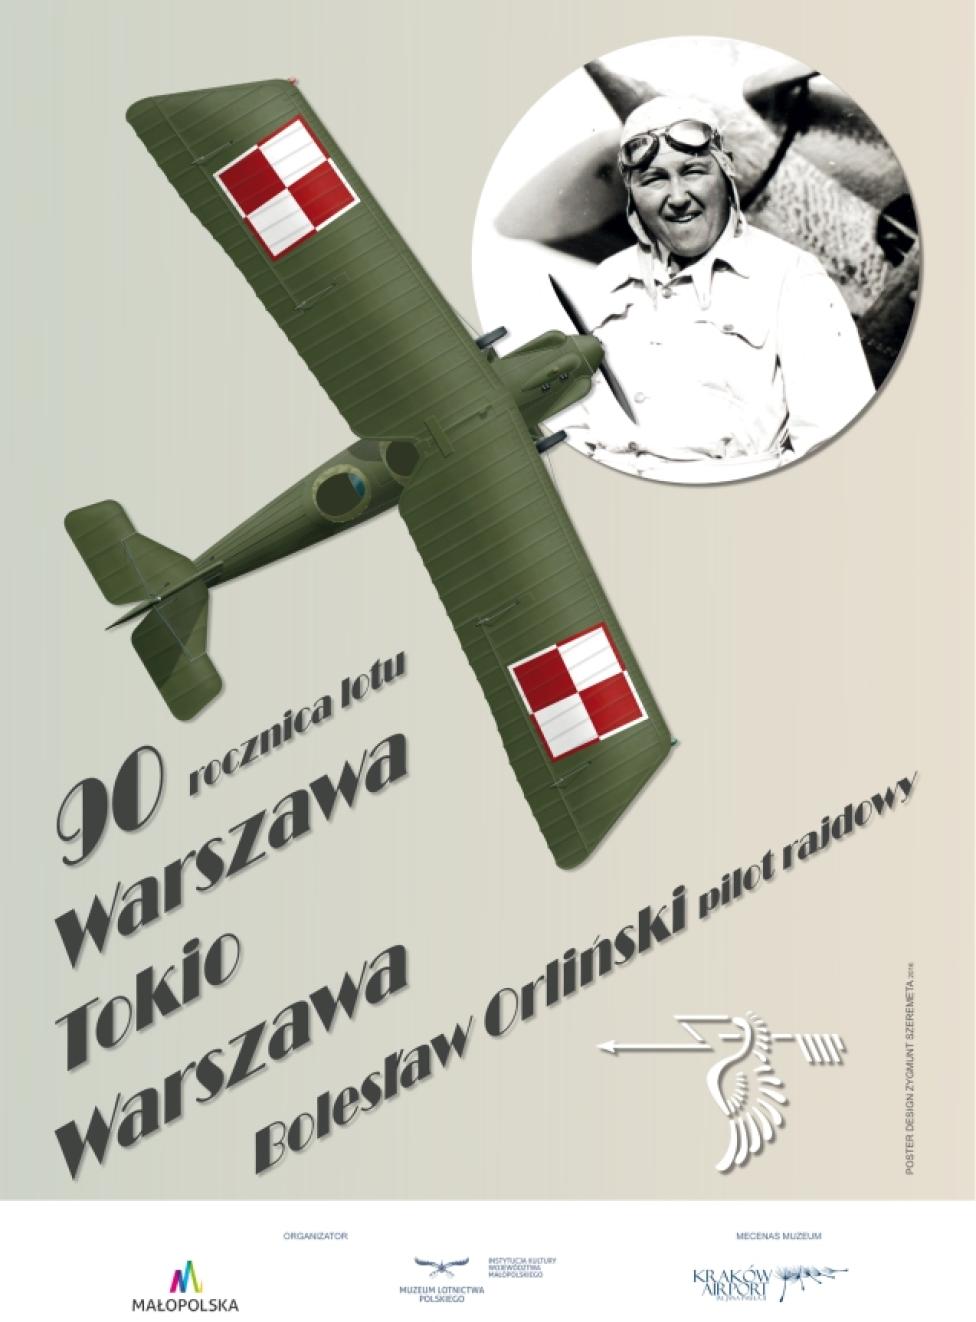 90 rocznica lotu Warszawa - Tokio - Warszawa. Bolesław Orlński - pilot rajdowy (fot. muzeumlotnictwa.pl)